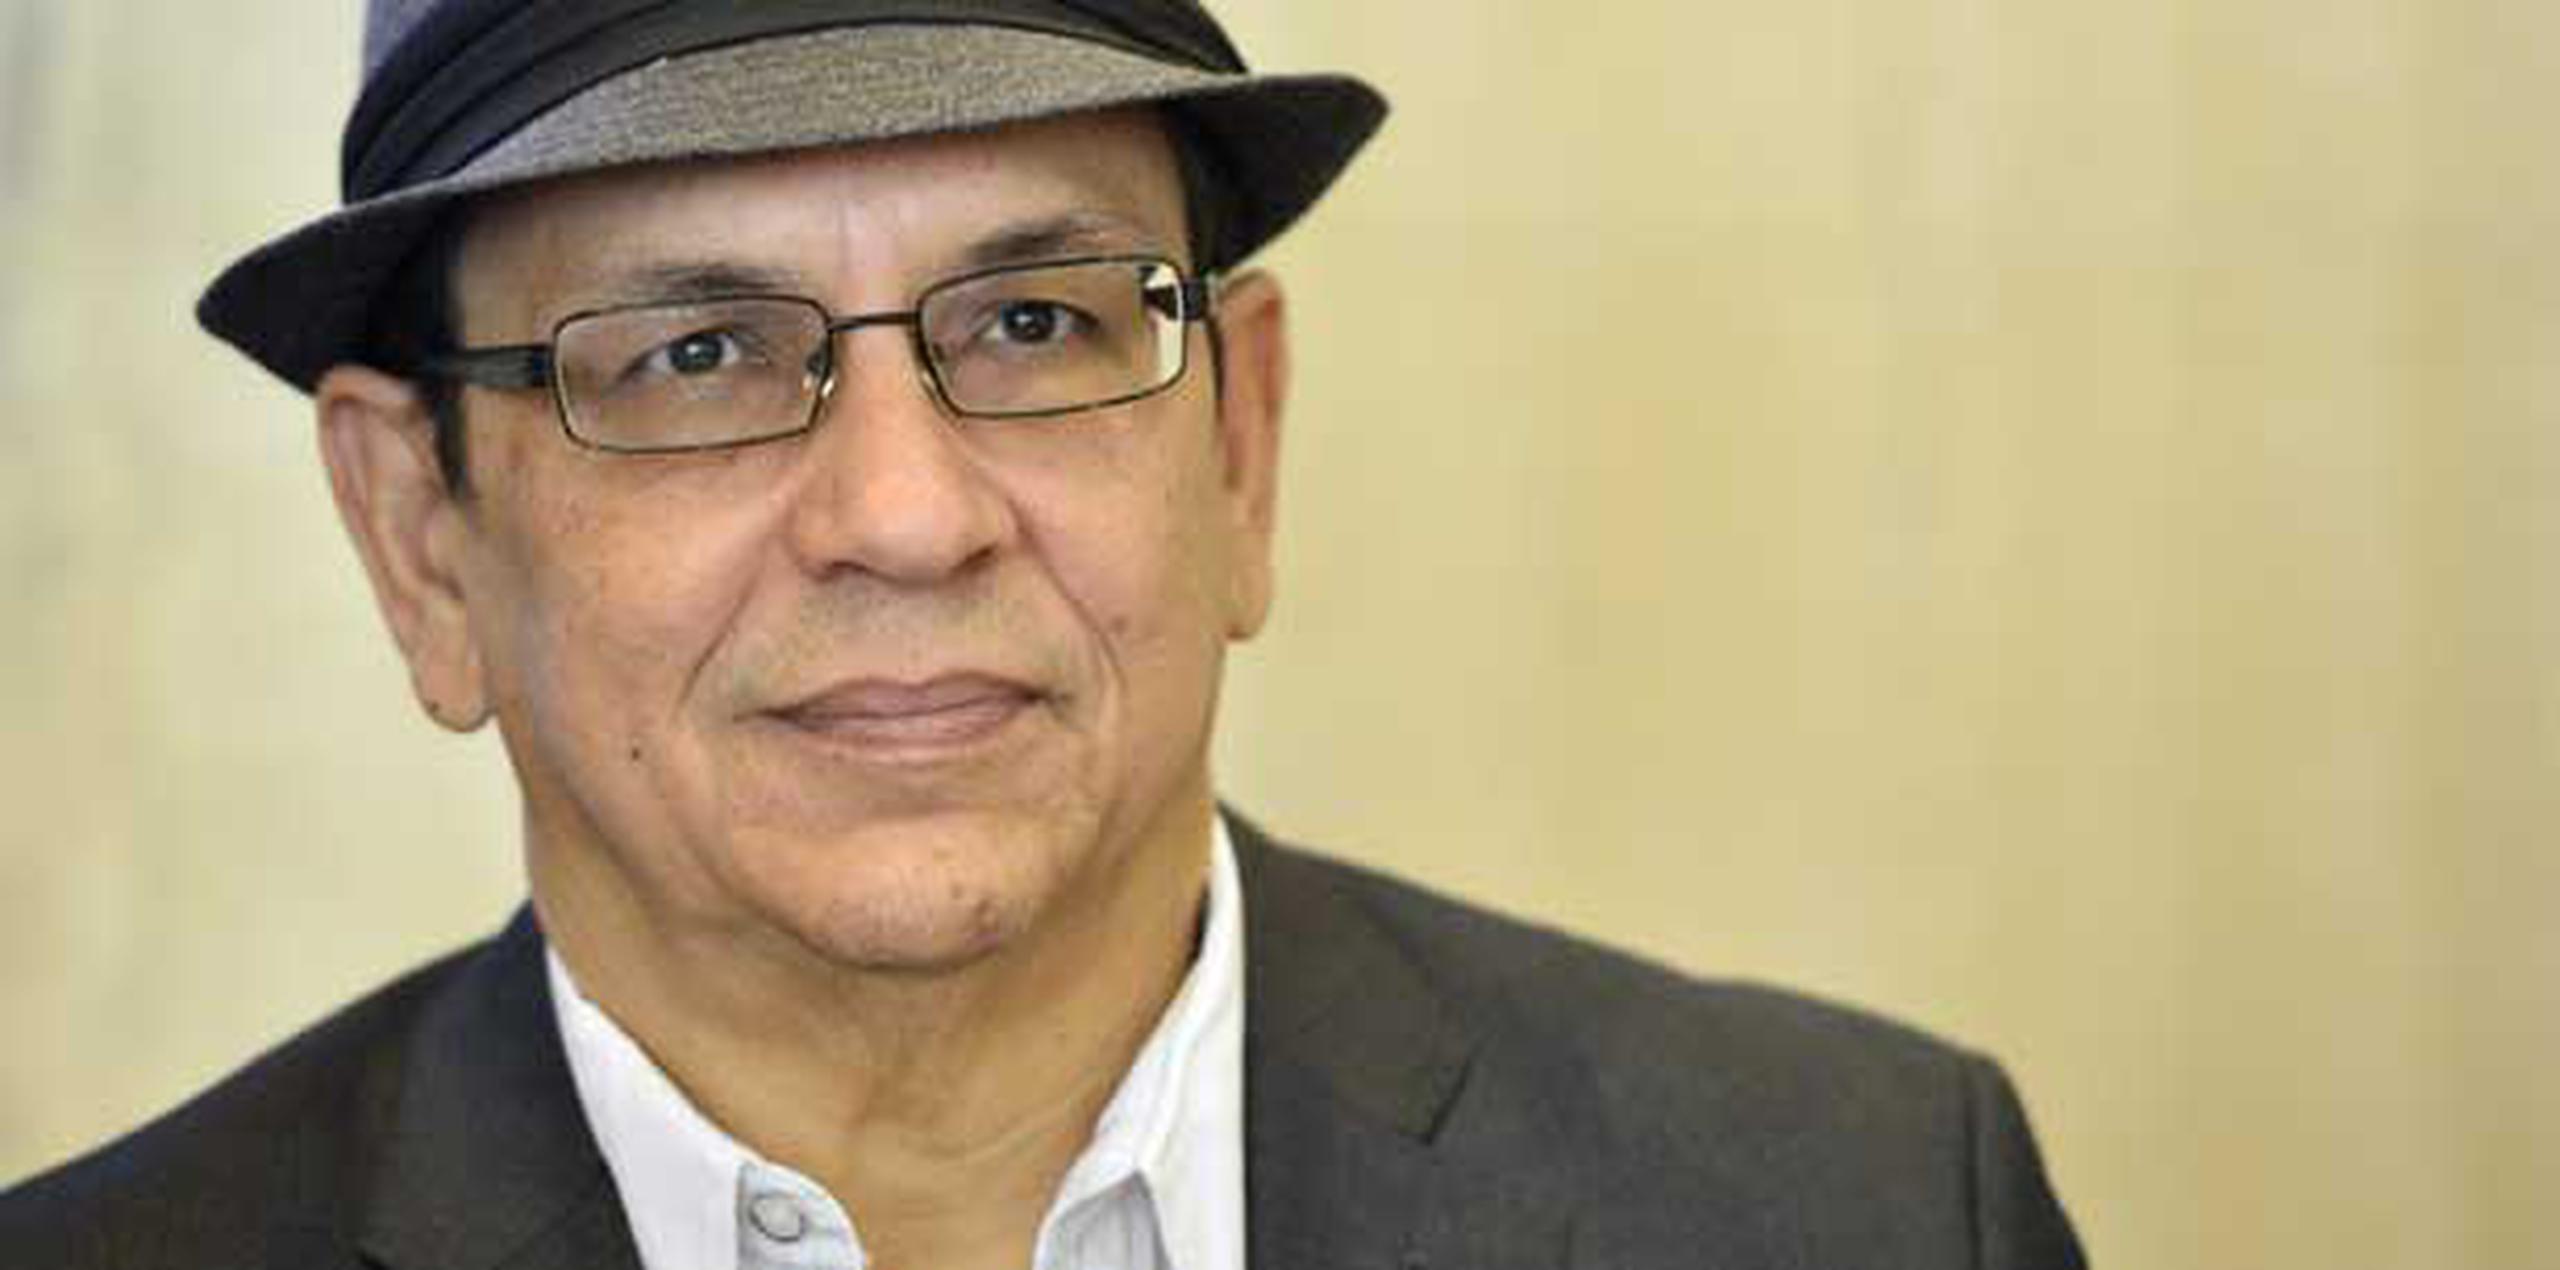 Gary Núñez, director de Plena Libre, asegura que el 2013 fue "un gran año" para la agrupación. (Archivo)